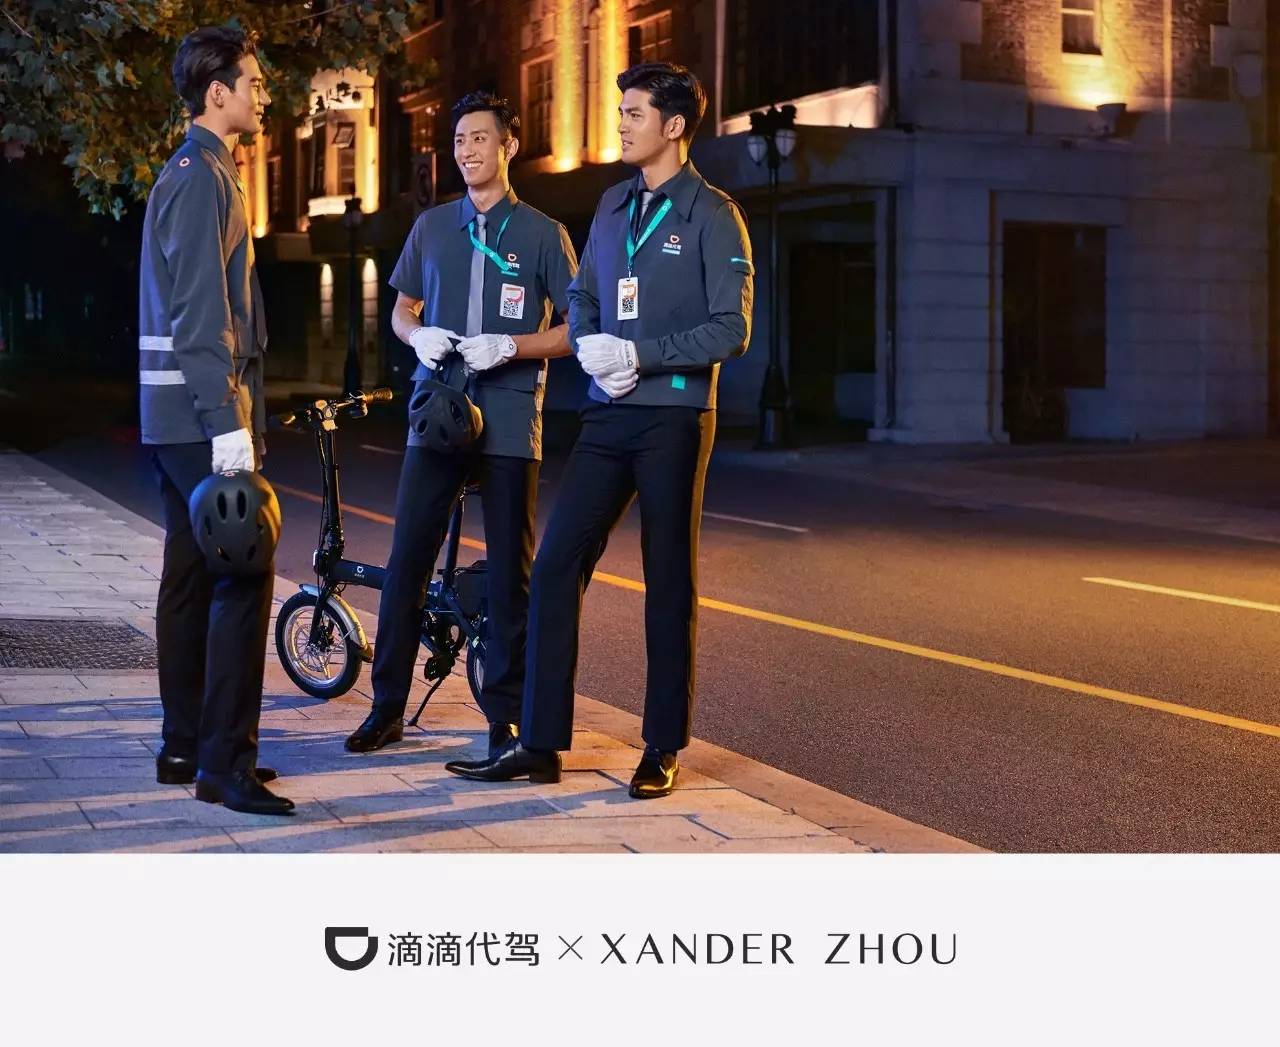 滴滴代驾两周年制服升级 xanderzhou跨界支持设计新装